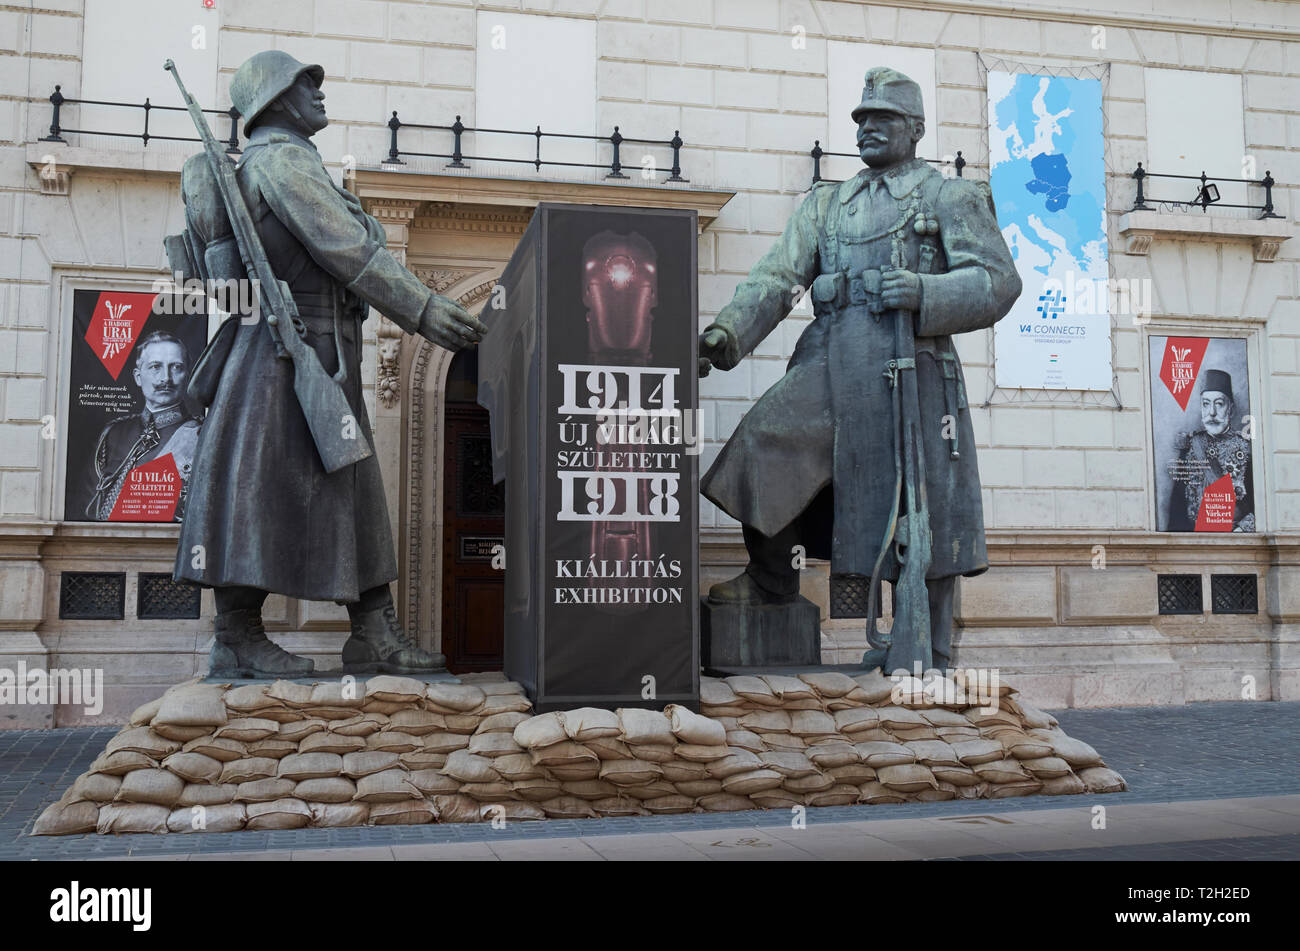 Statuen von Soldaten vor dem Ersten Weltkrieg Ausstellung "Eine neue Welt ist geboren" an der Varkert Bazar, Budapest, Ungarn. Stockfoto